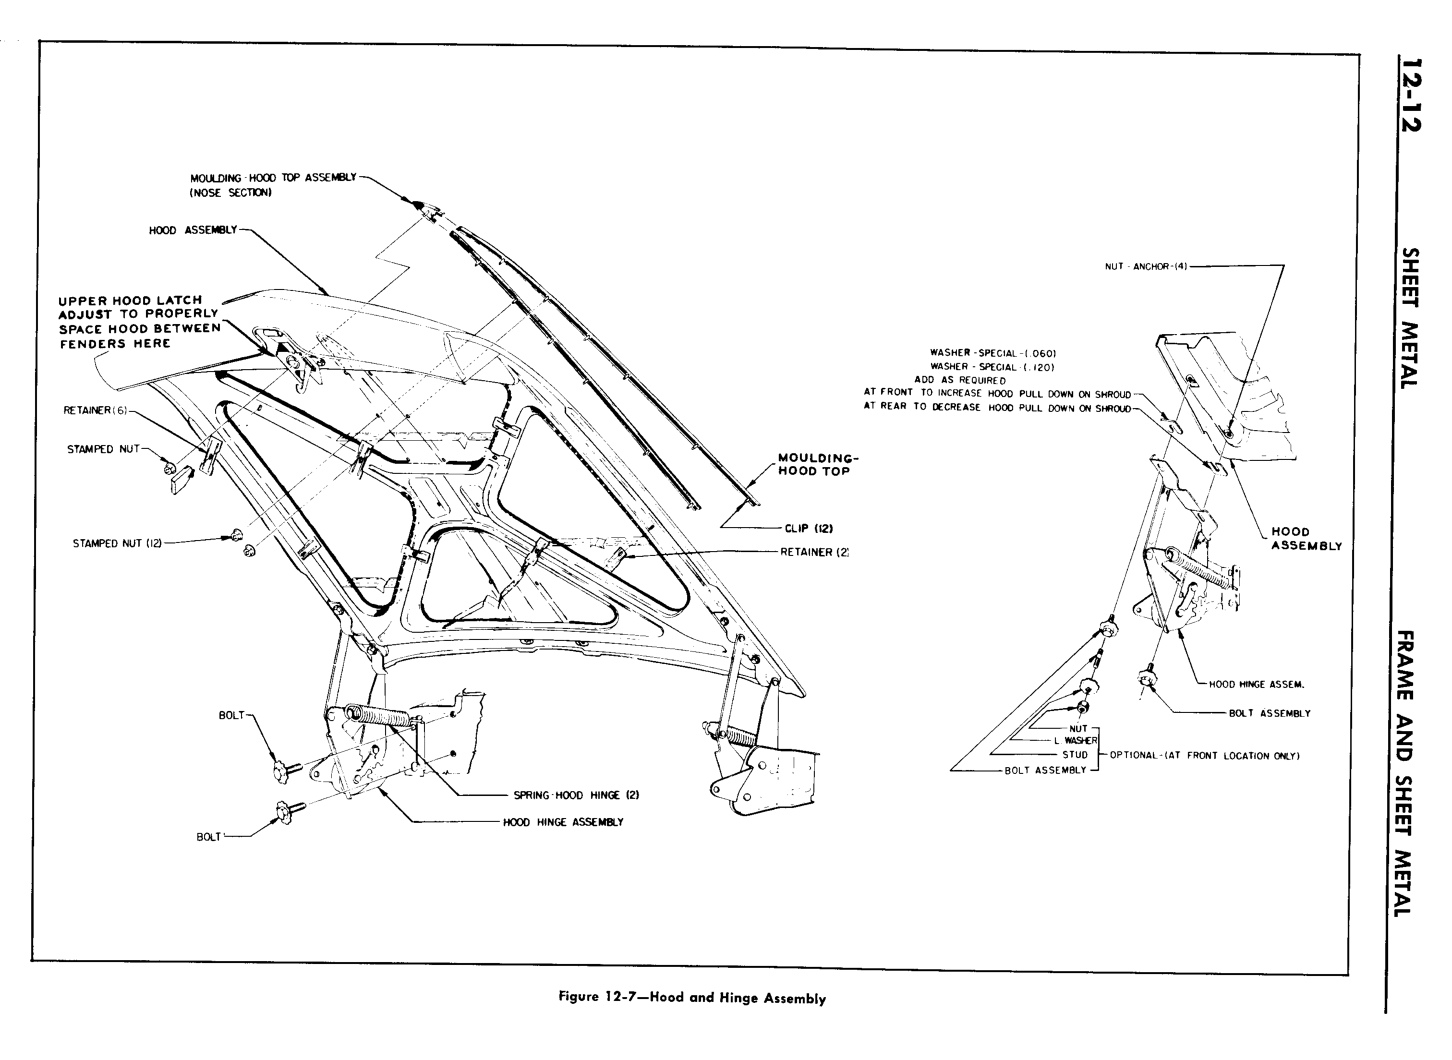 n_13 1960 Buick Shop Manual - Frame & Sheet Metal-012-012.jpg